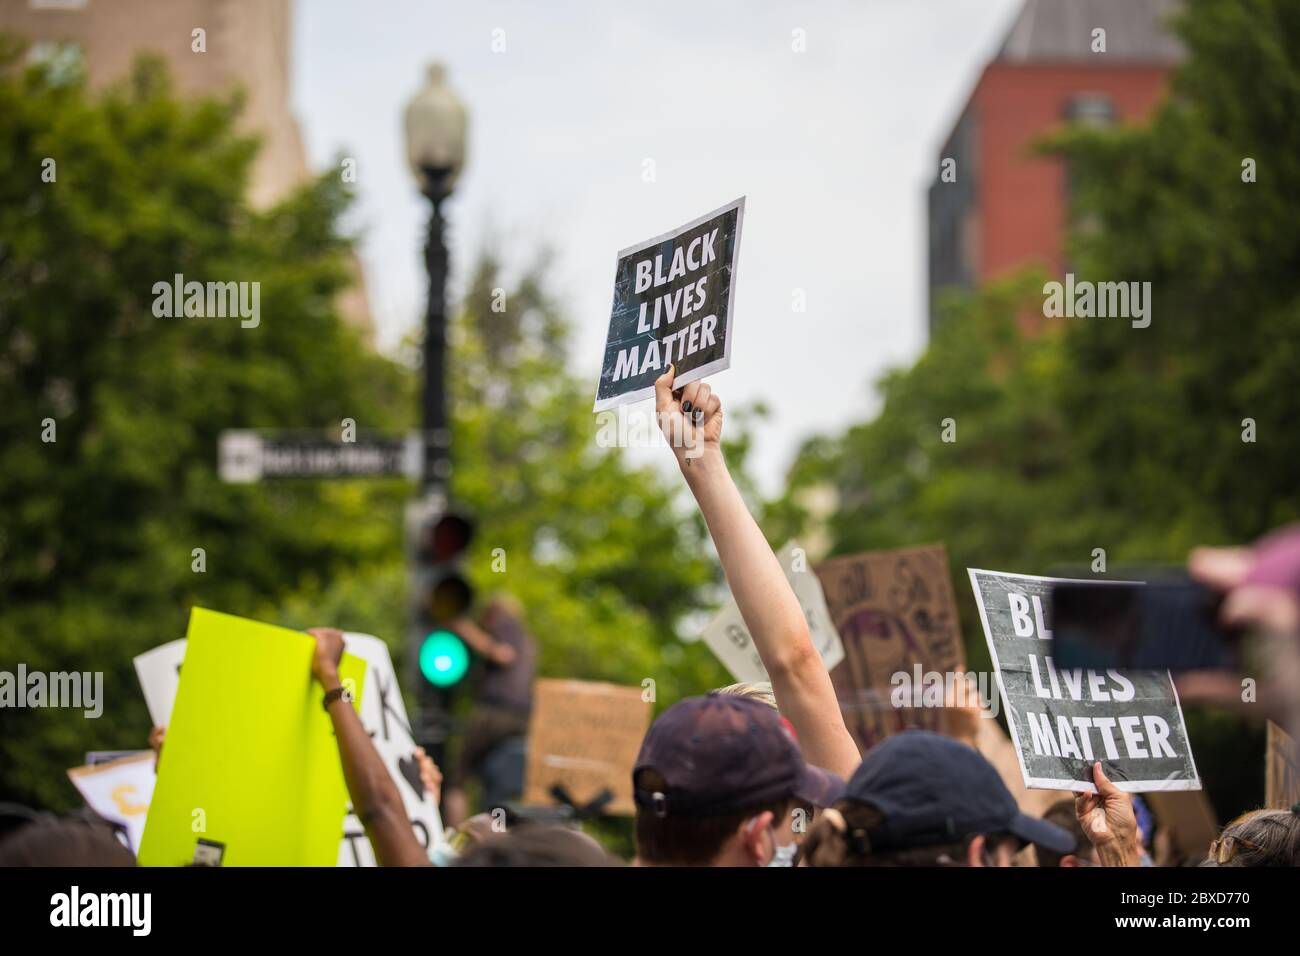 Washington, D.C., États-Unis. 6 juin 2020. Les manifestants se réunissent pour une manifestation de Black Lives Matter à Washington, D.C., ce qui a marqué le plus grand rassemblement de manifestants de la ville depuis la mort de George Floyd. Credit Nicole Glass / Alamy Live News. Banque D'Images